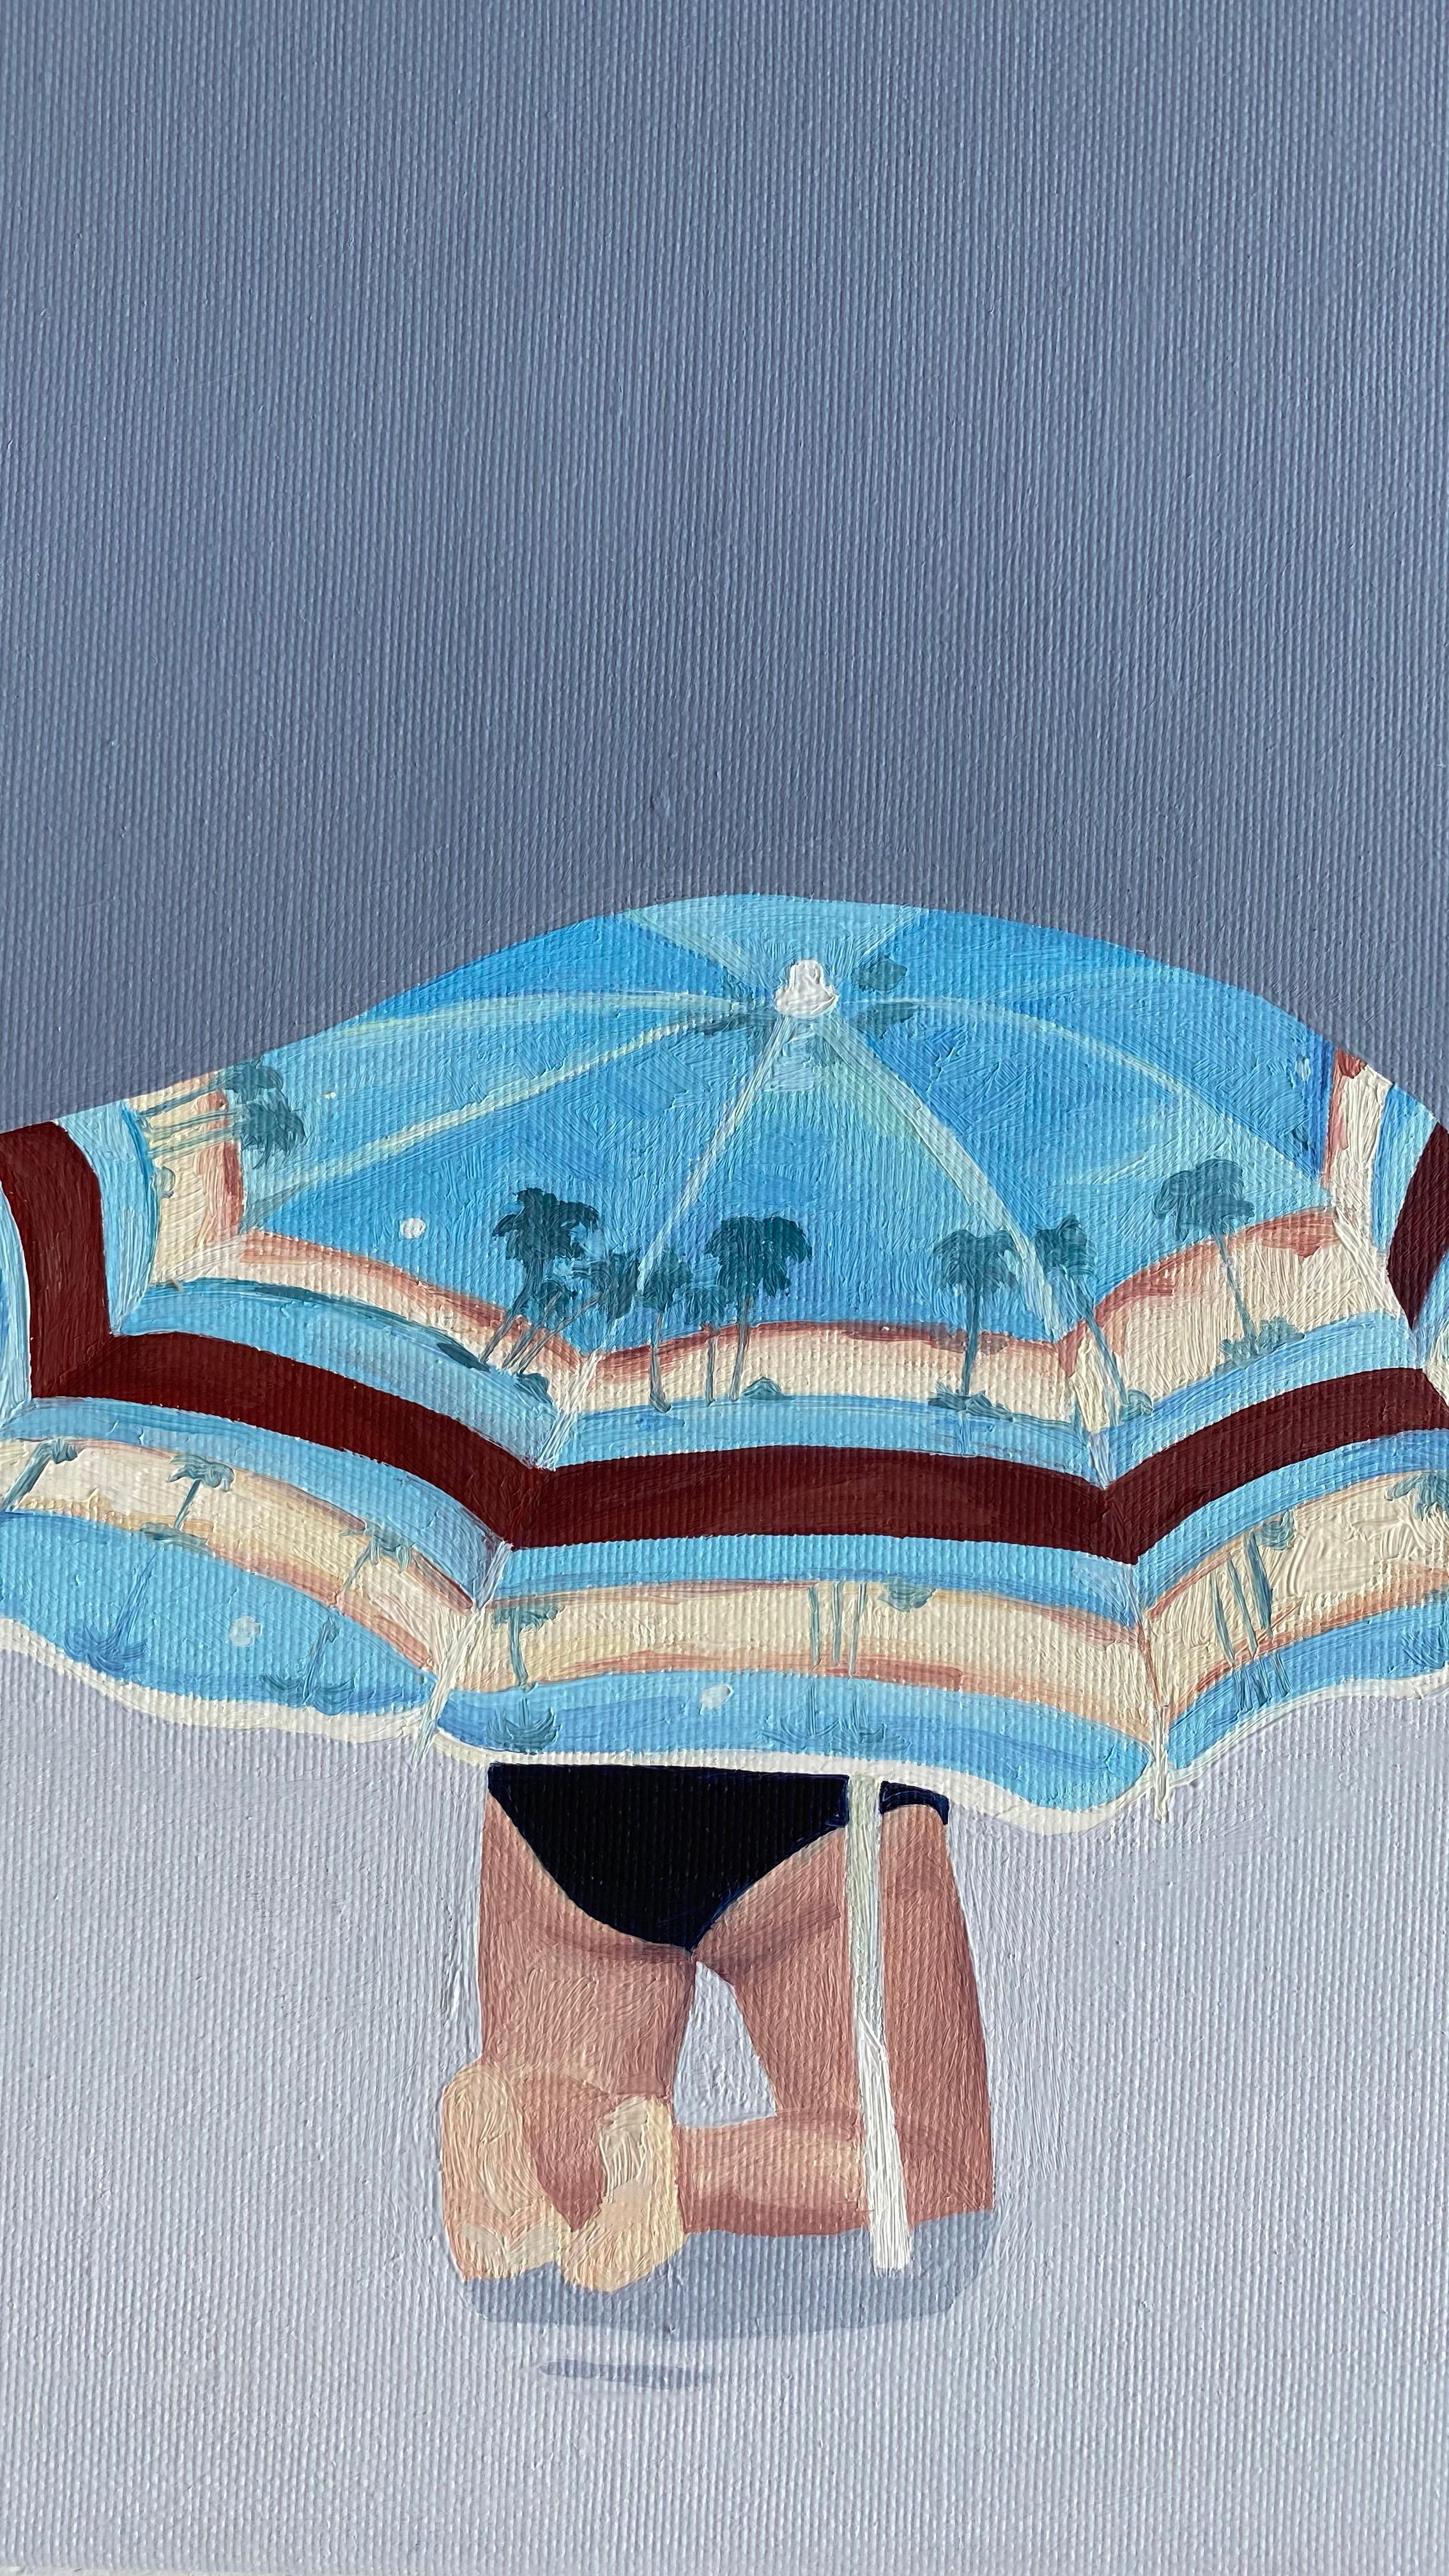 La prière - Peinture à l'huile figurative moderne, vue de plage, paysage, abat-jour - Painting de Julita Malinowska